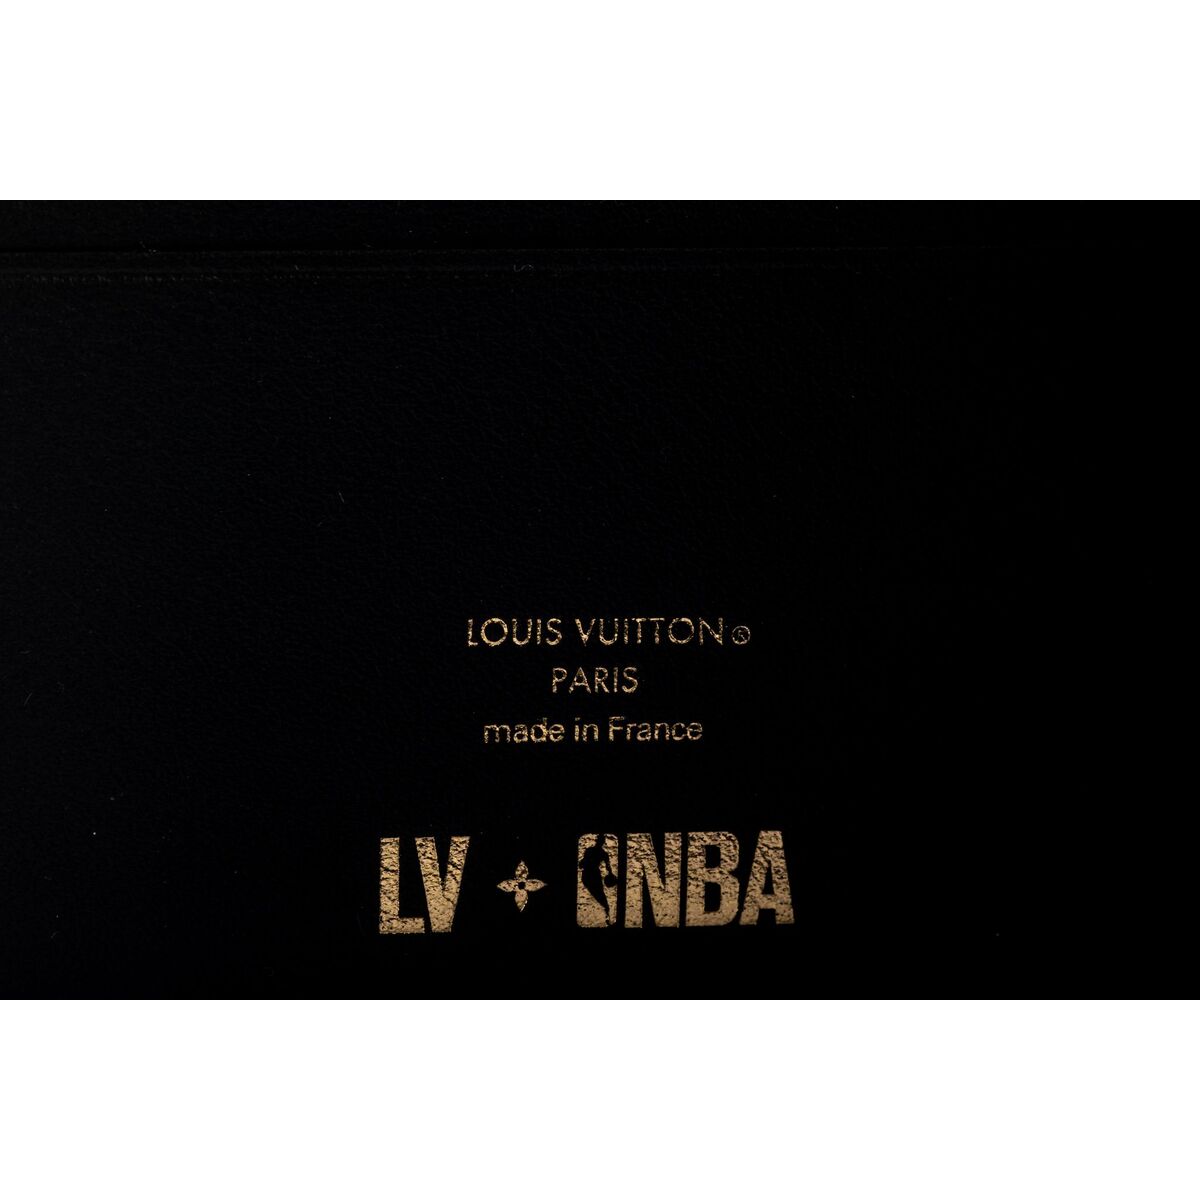 LV x LIm. Ed. NBA Multiple Wallet NIB